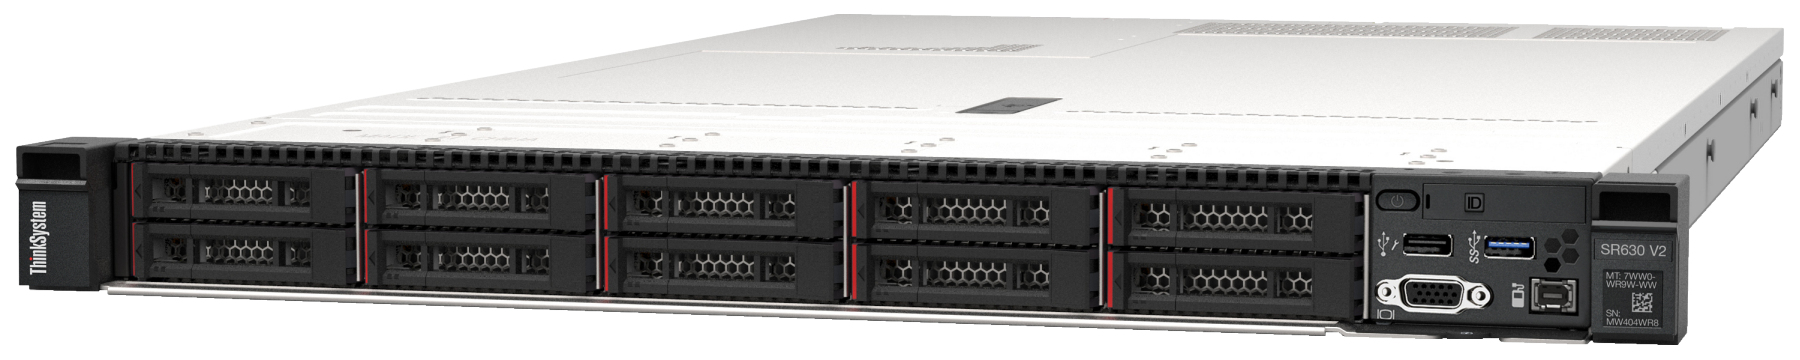 Сервер Lenovo ThinkSystem SR630 V2 (7Z71A05DEA). Фиксированная комплектация сервера